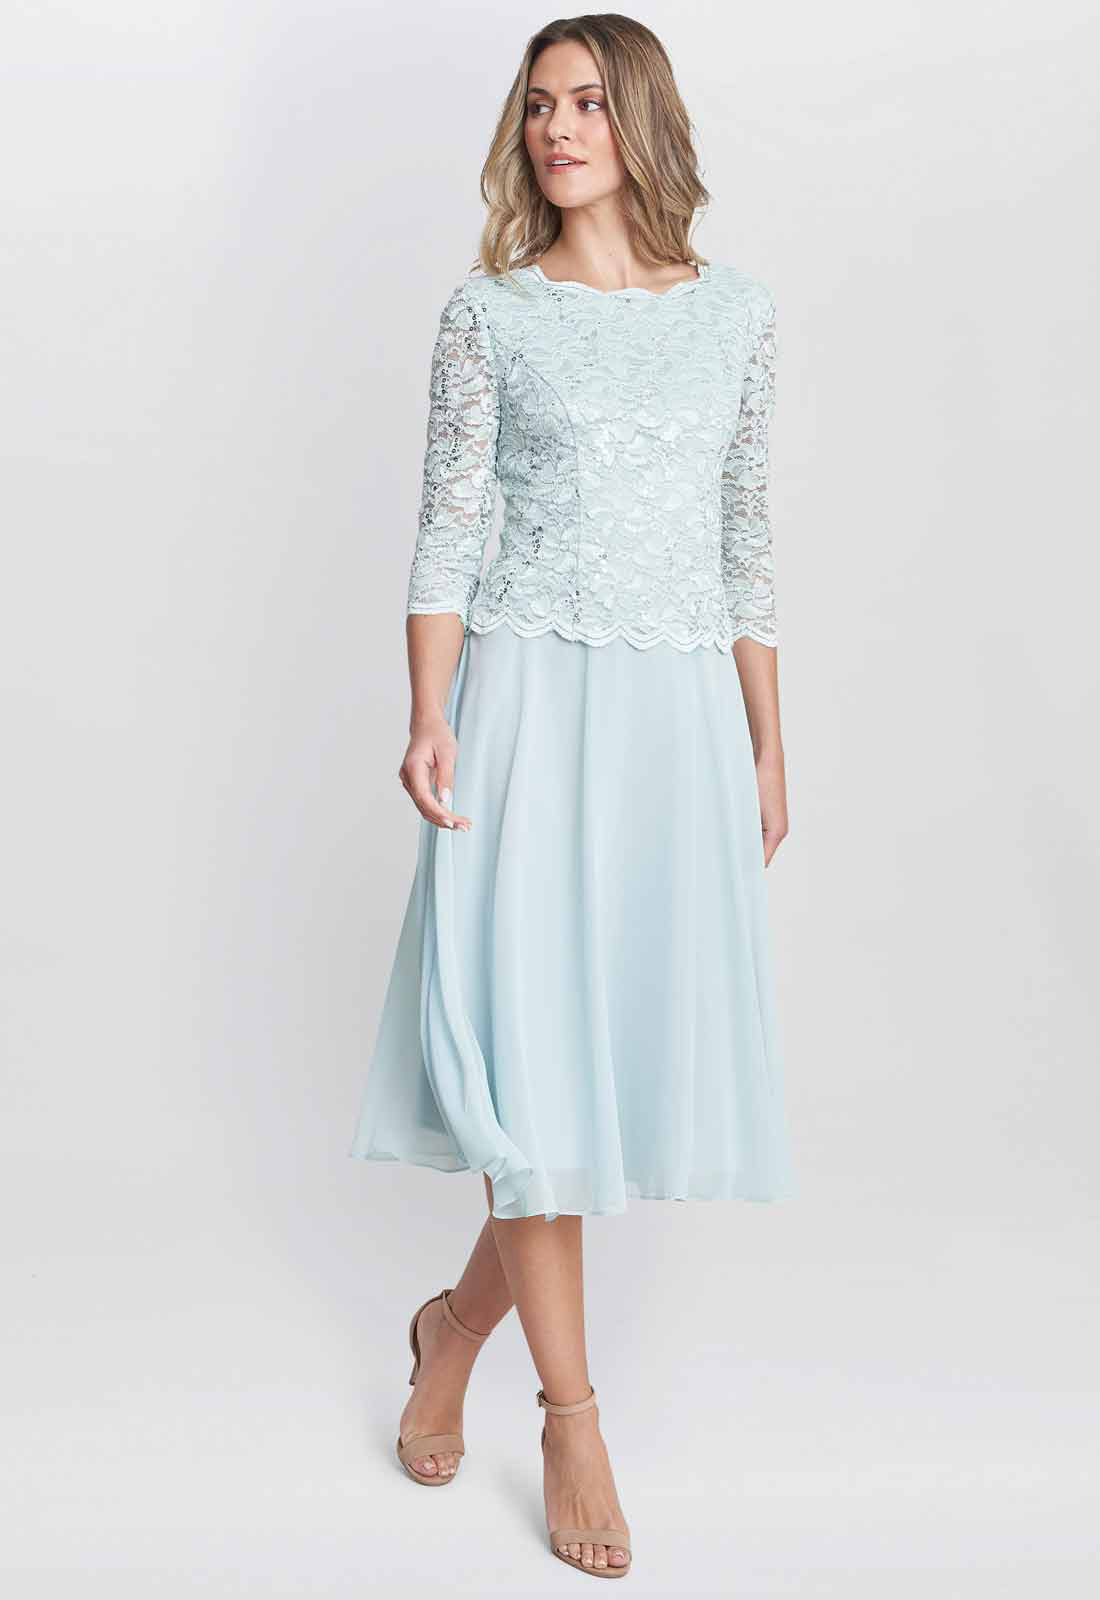 Gina Bacconi Mint Rona Midi Dress With Lace Bodice & Chiffon Skirt